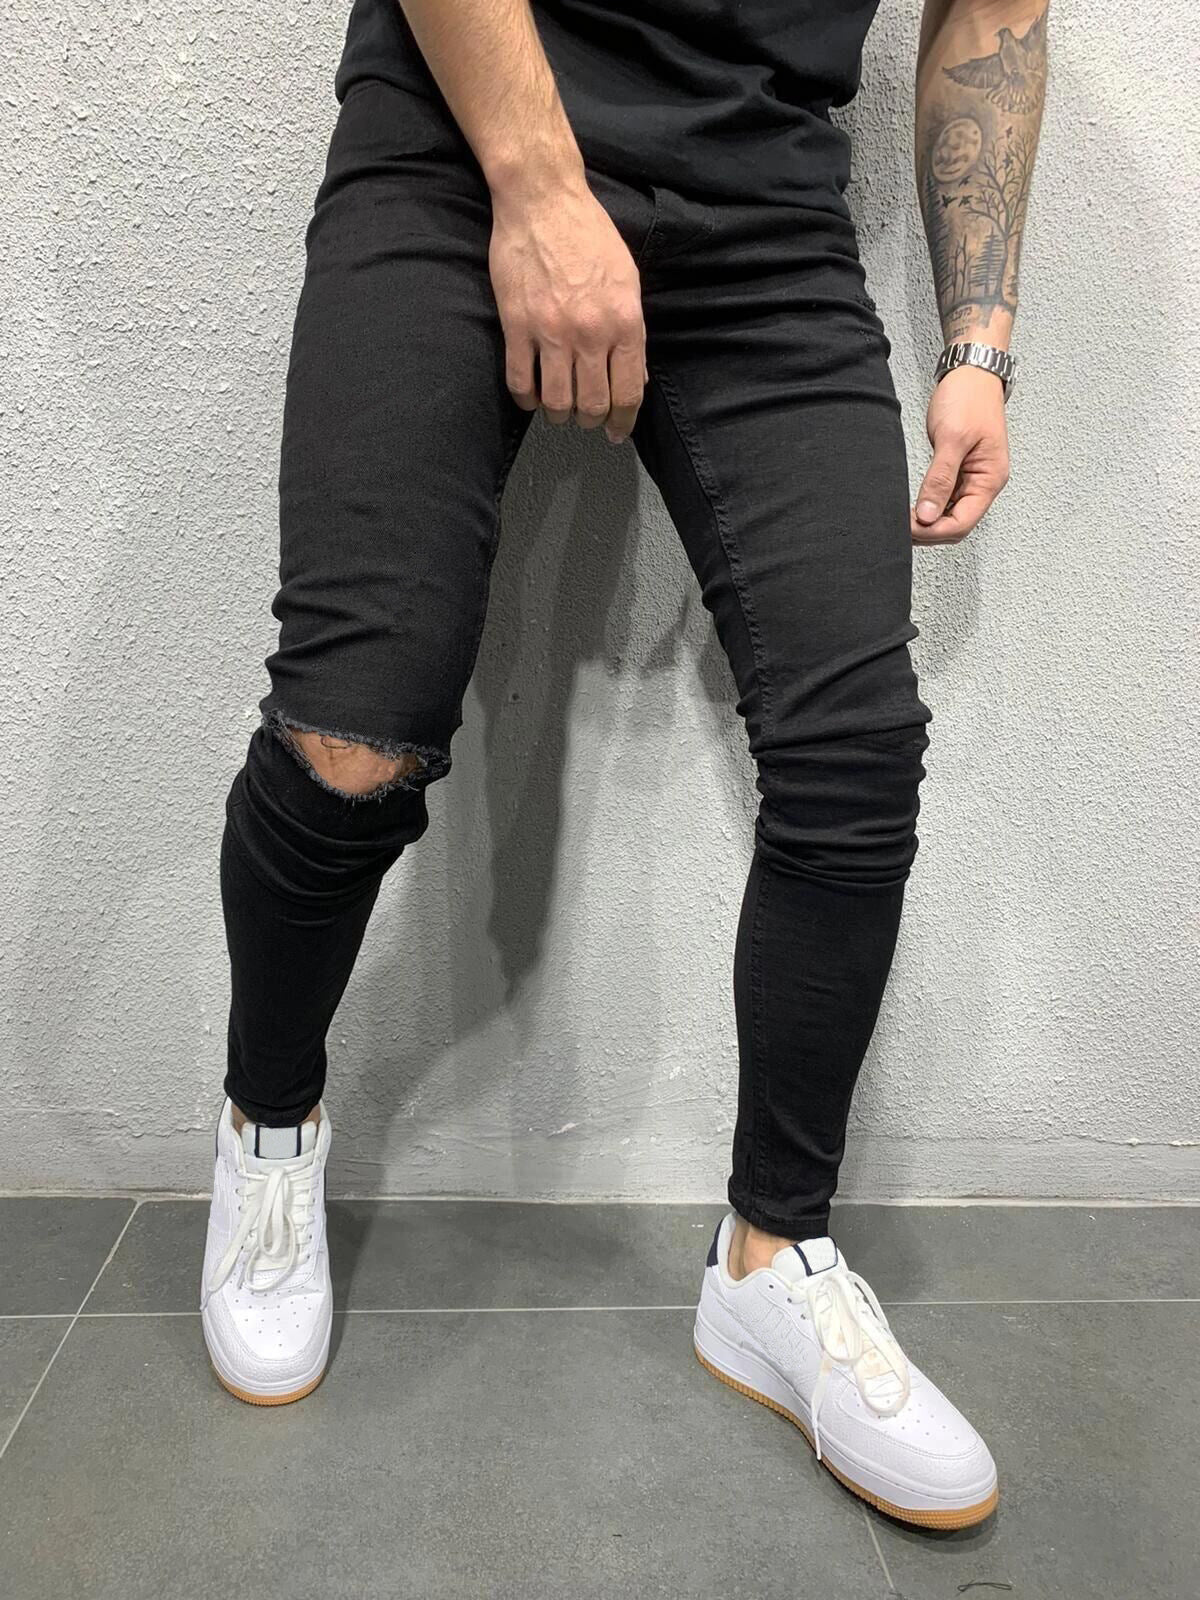 Men's Stretch Skinny Cut Jeans